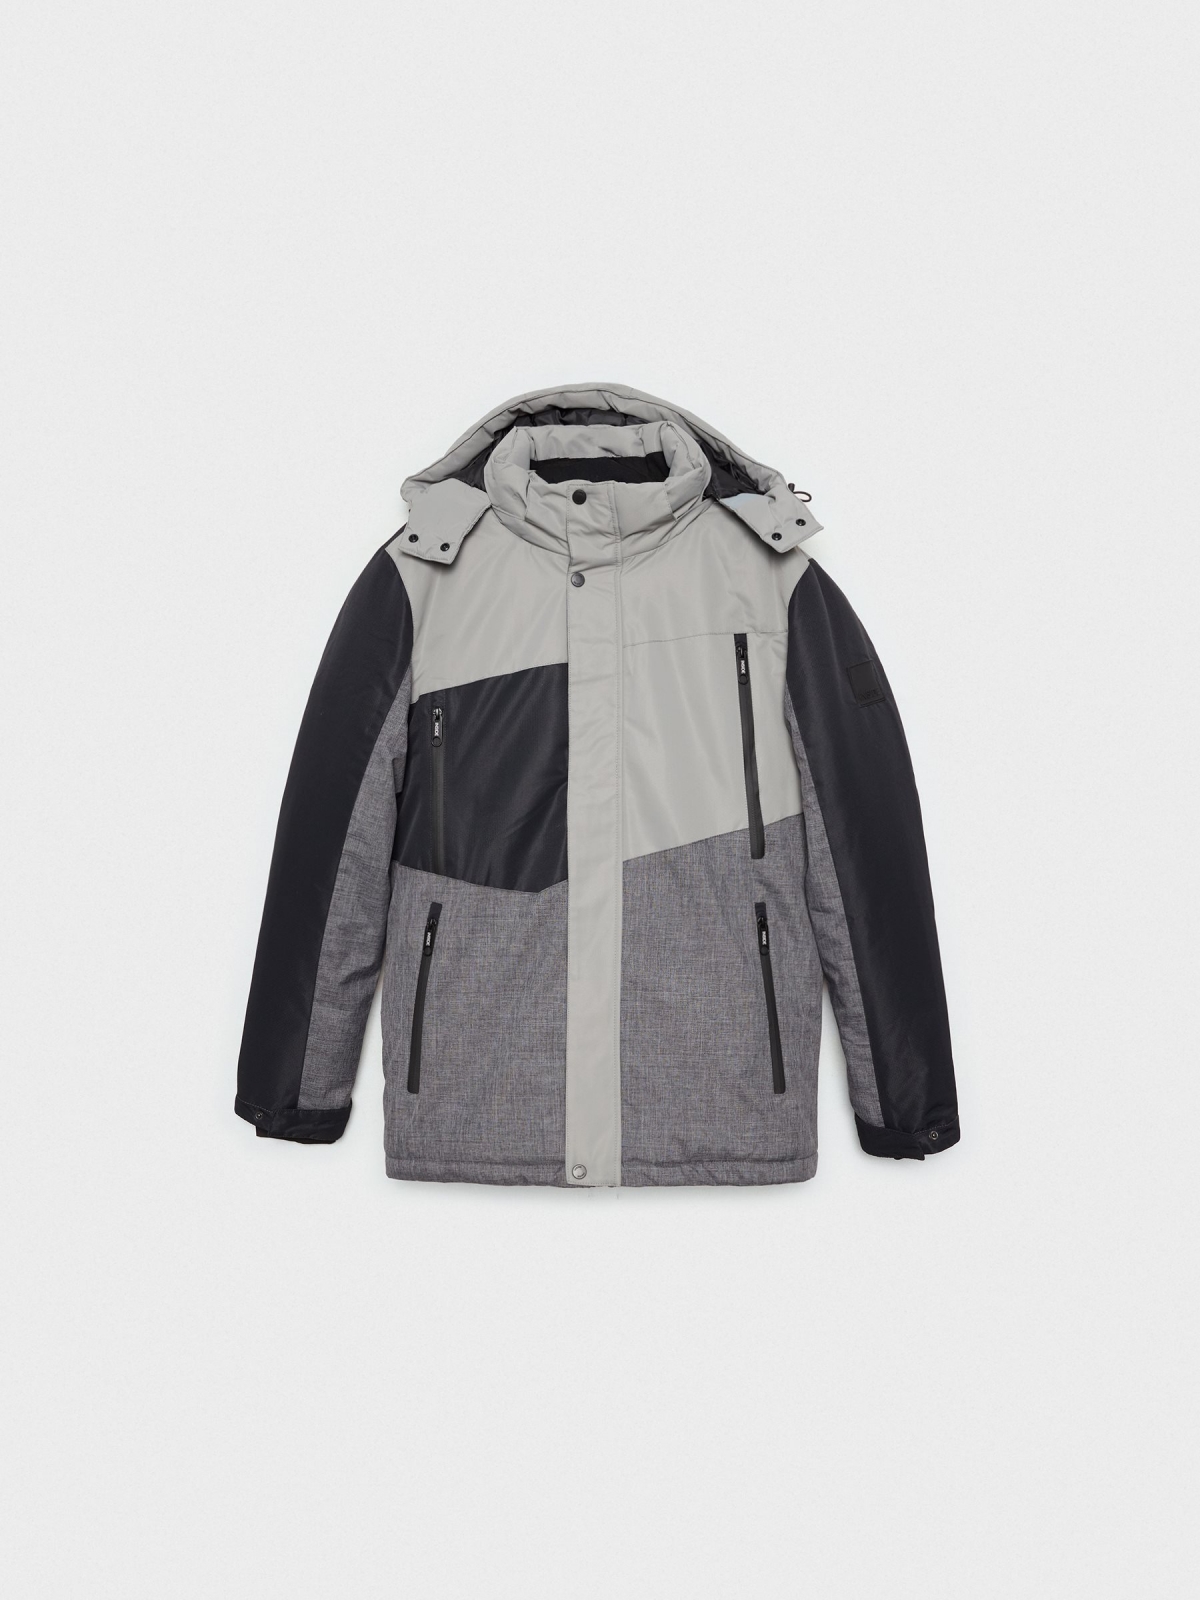  Nylon jacket with closed pockets grey